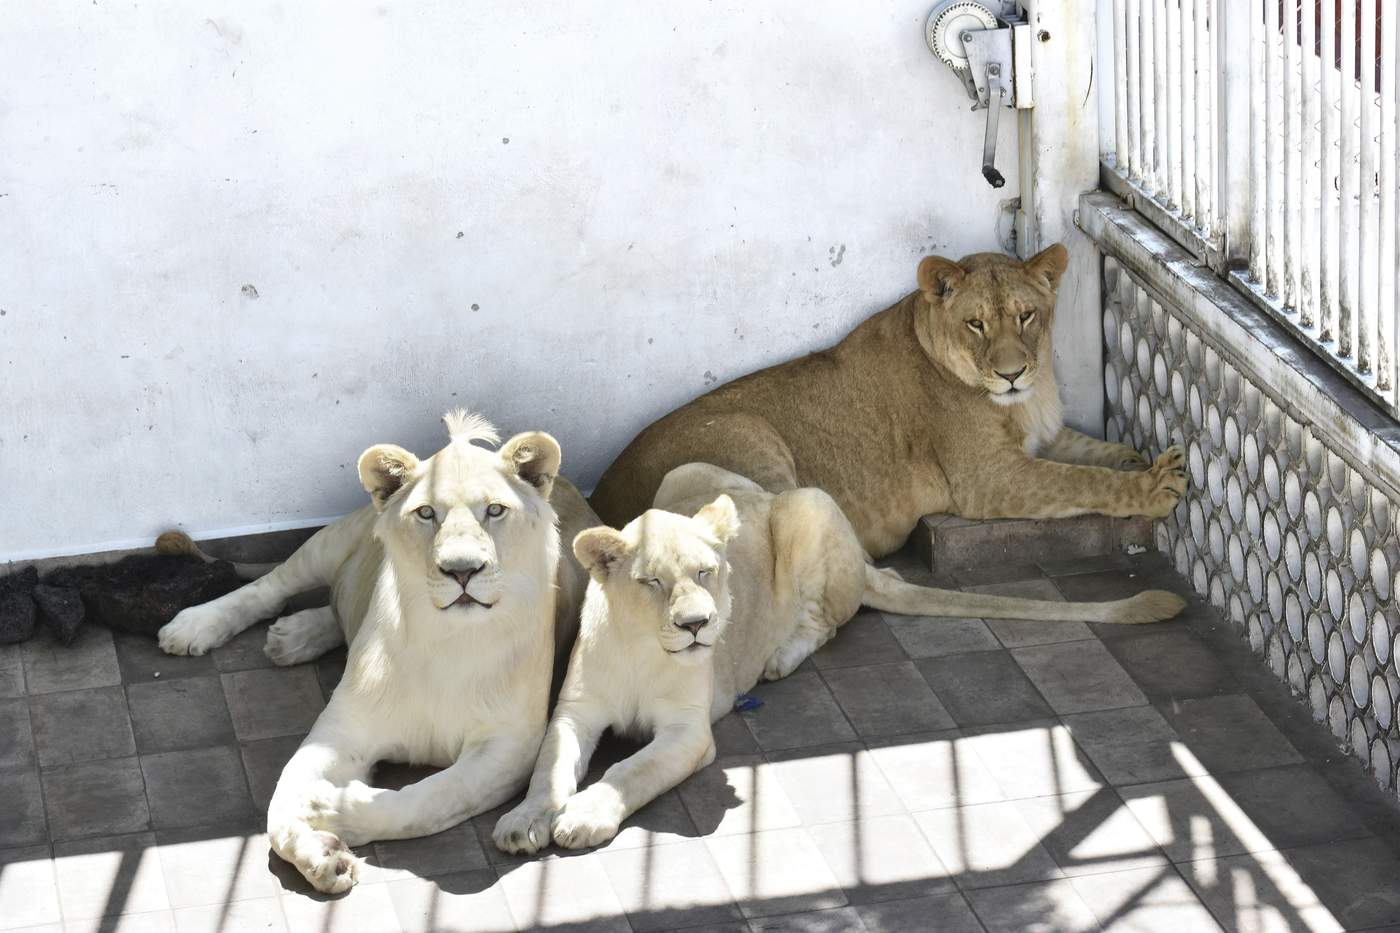 La familia solicita que los leones les sean devueltos pues argumentan que cuentan con los permisos necesarios para tenerlos.